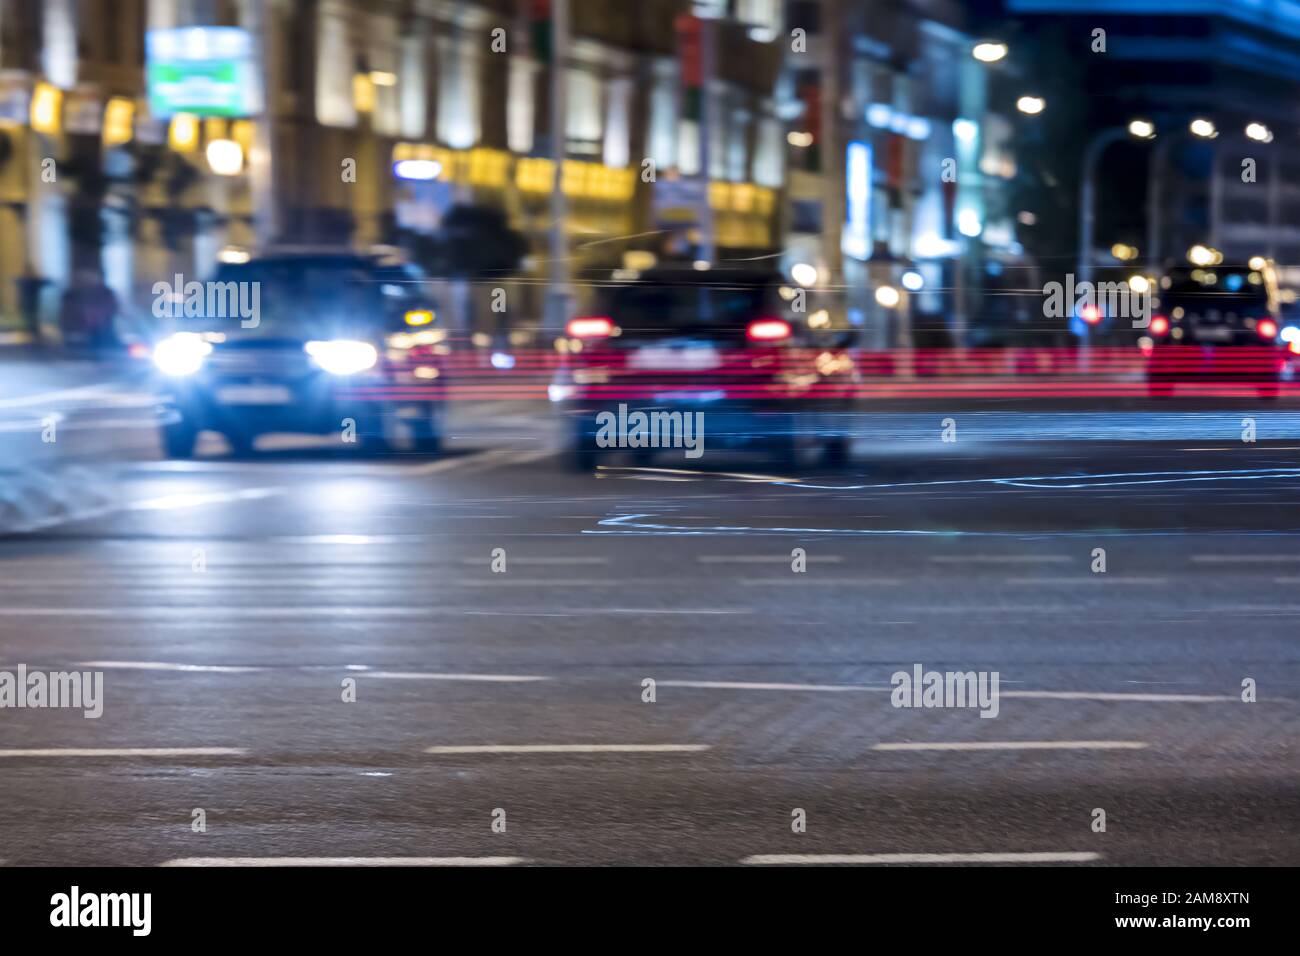 Farbenfrohe, verschwommene Autolampen, die die nächtliche Straße der Stadt beleuchten Stockfoto